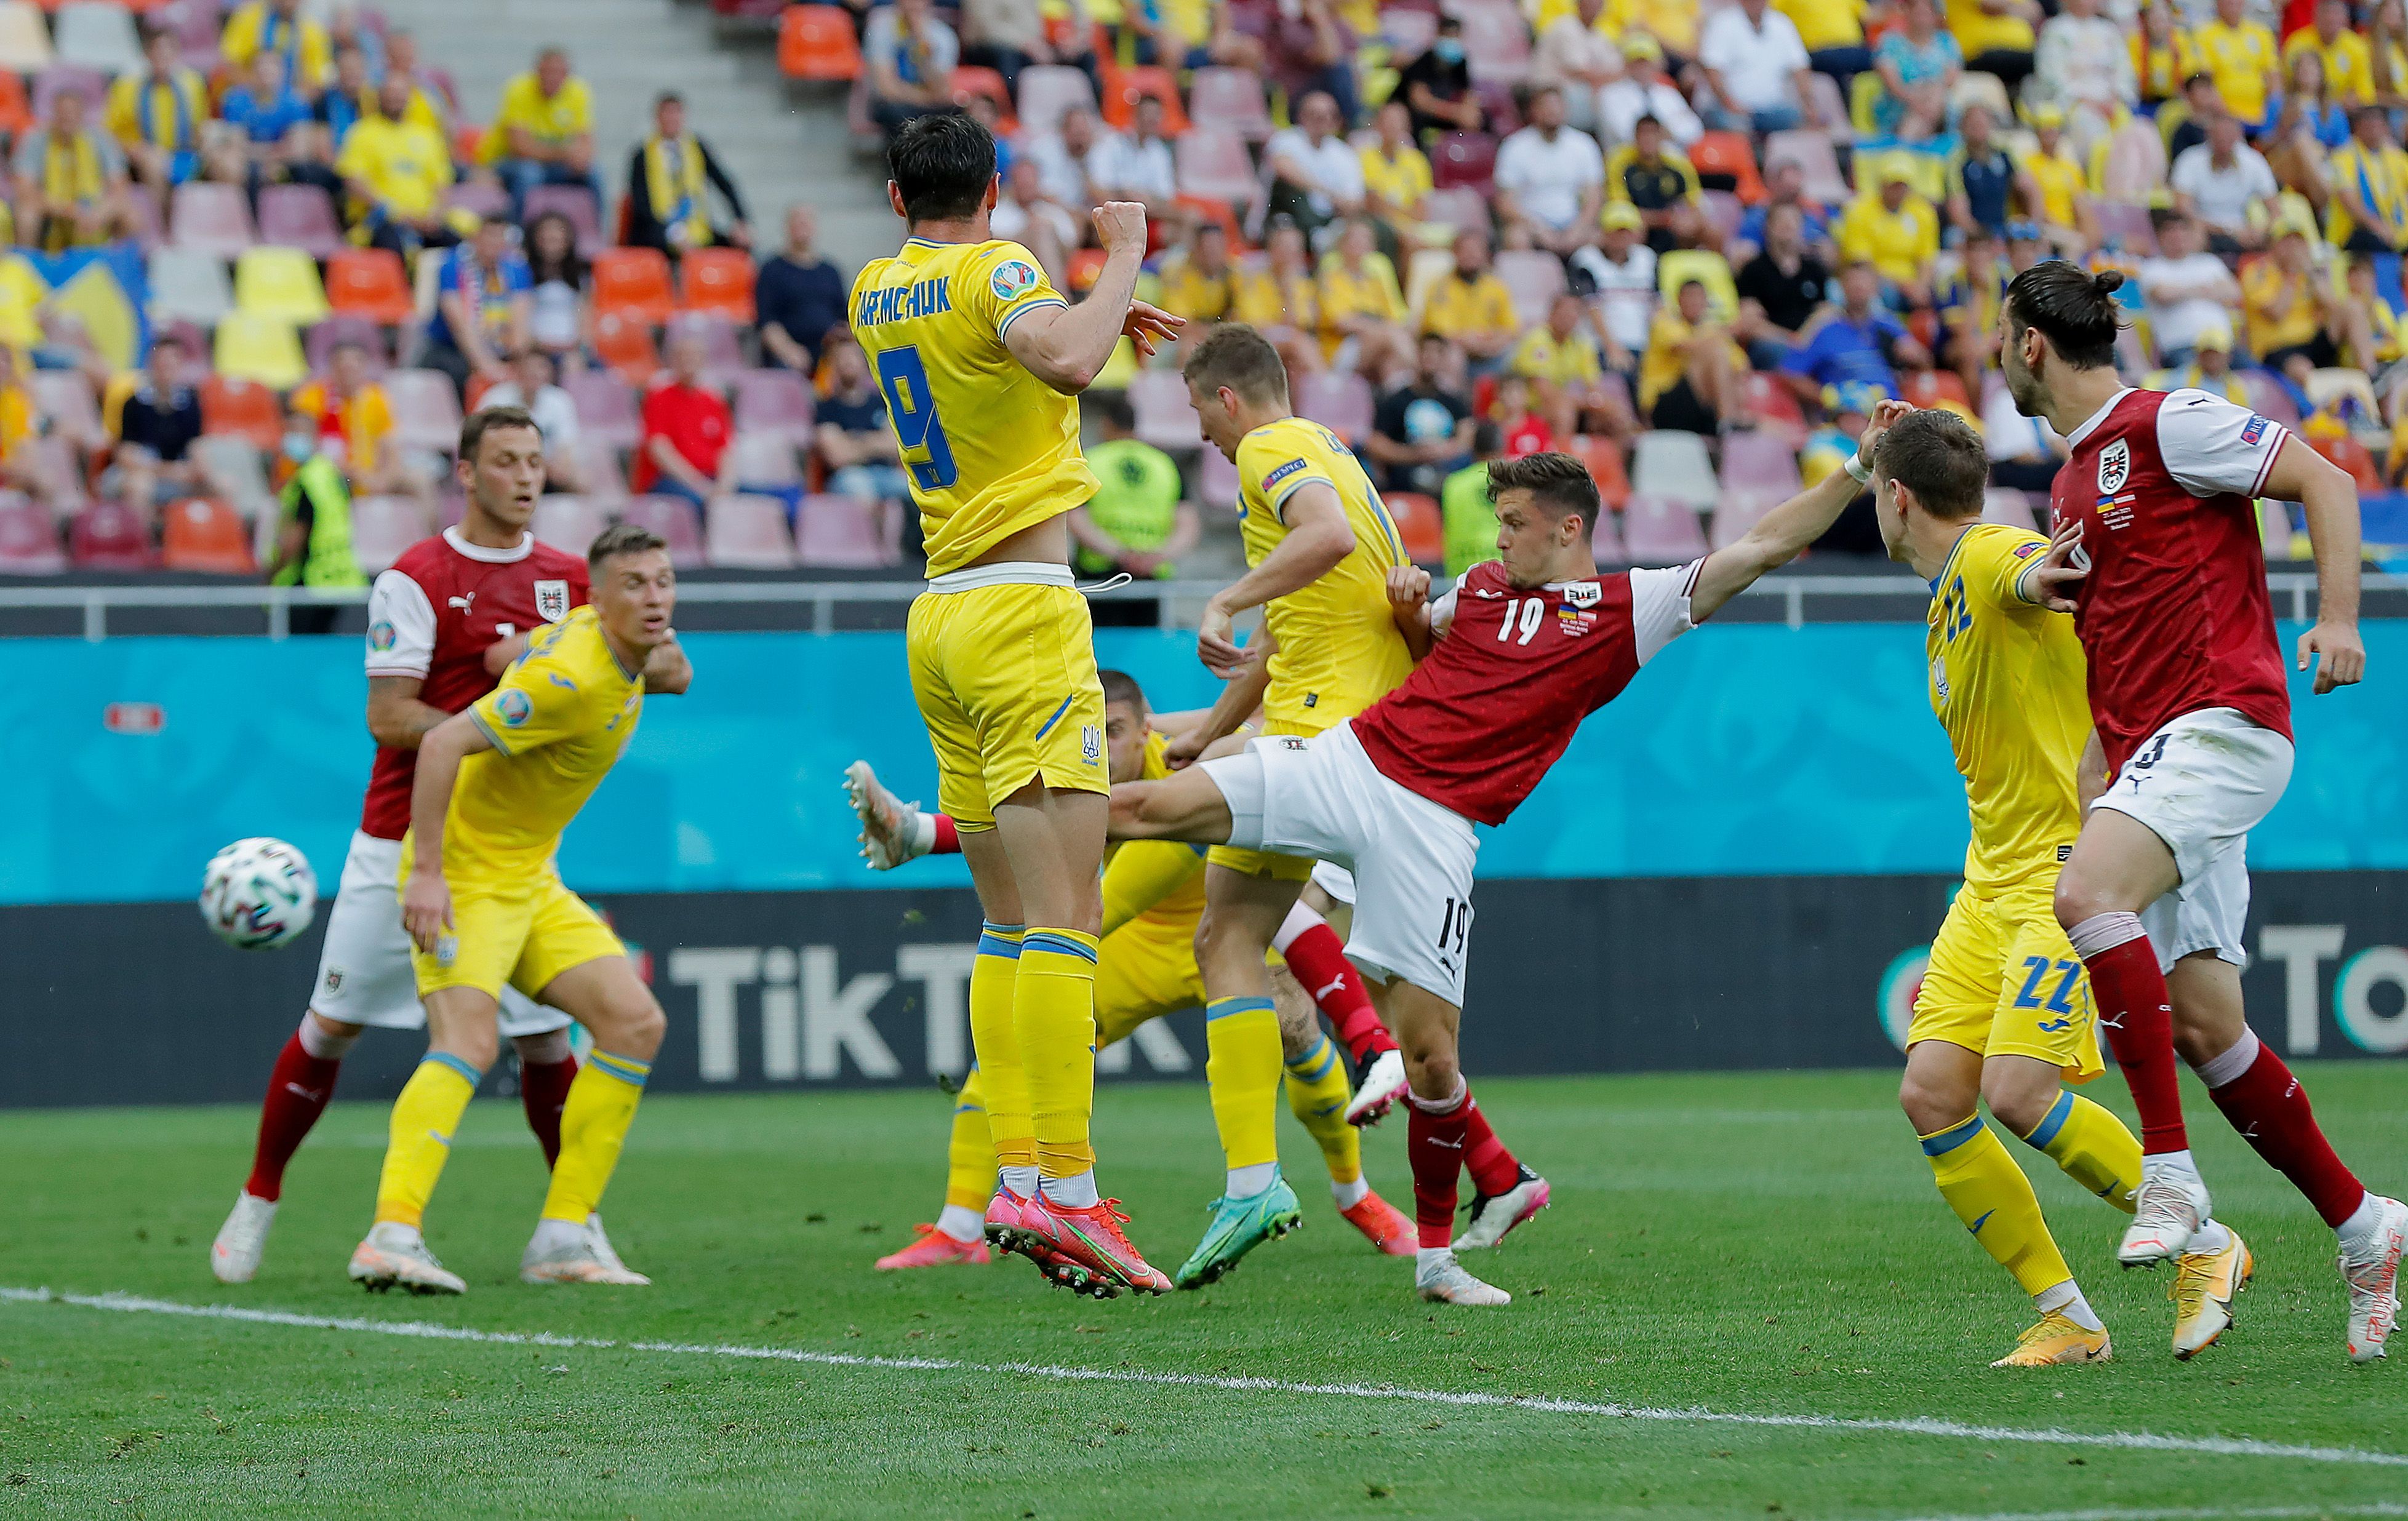 Крістоф Баумгартнер забив гол у матчі Україна - Австрія: відео